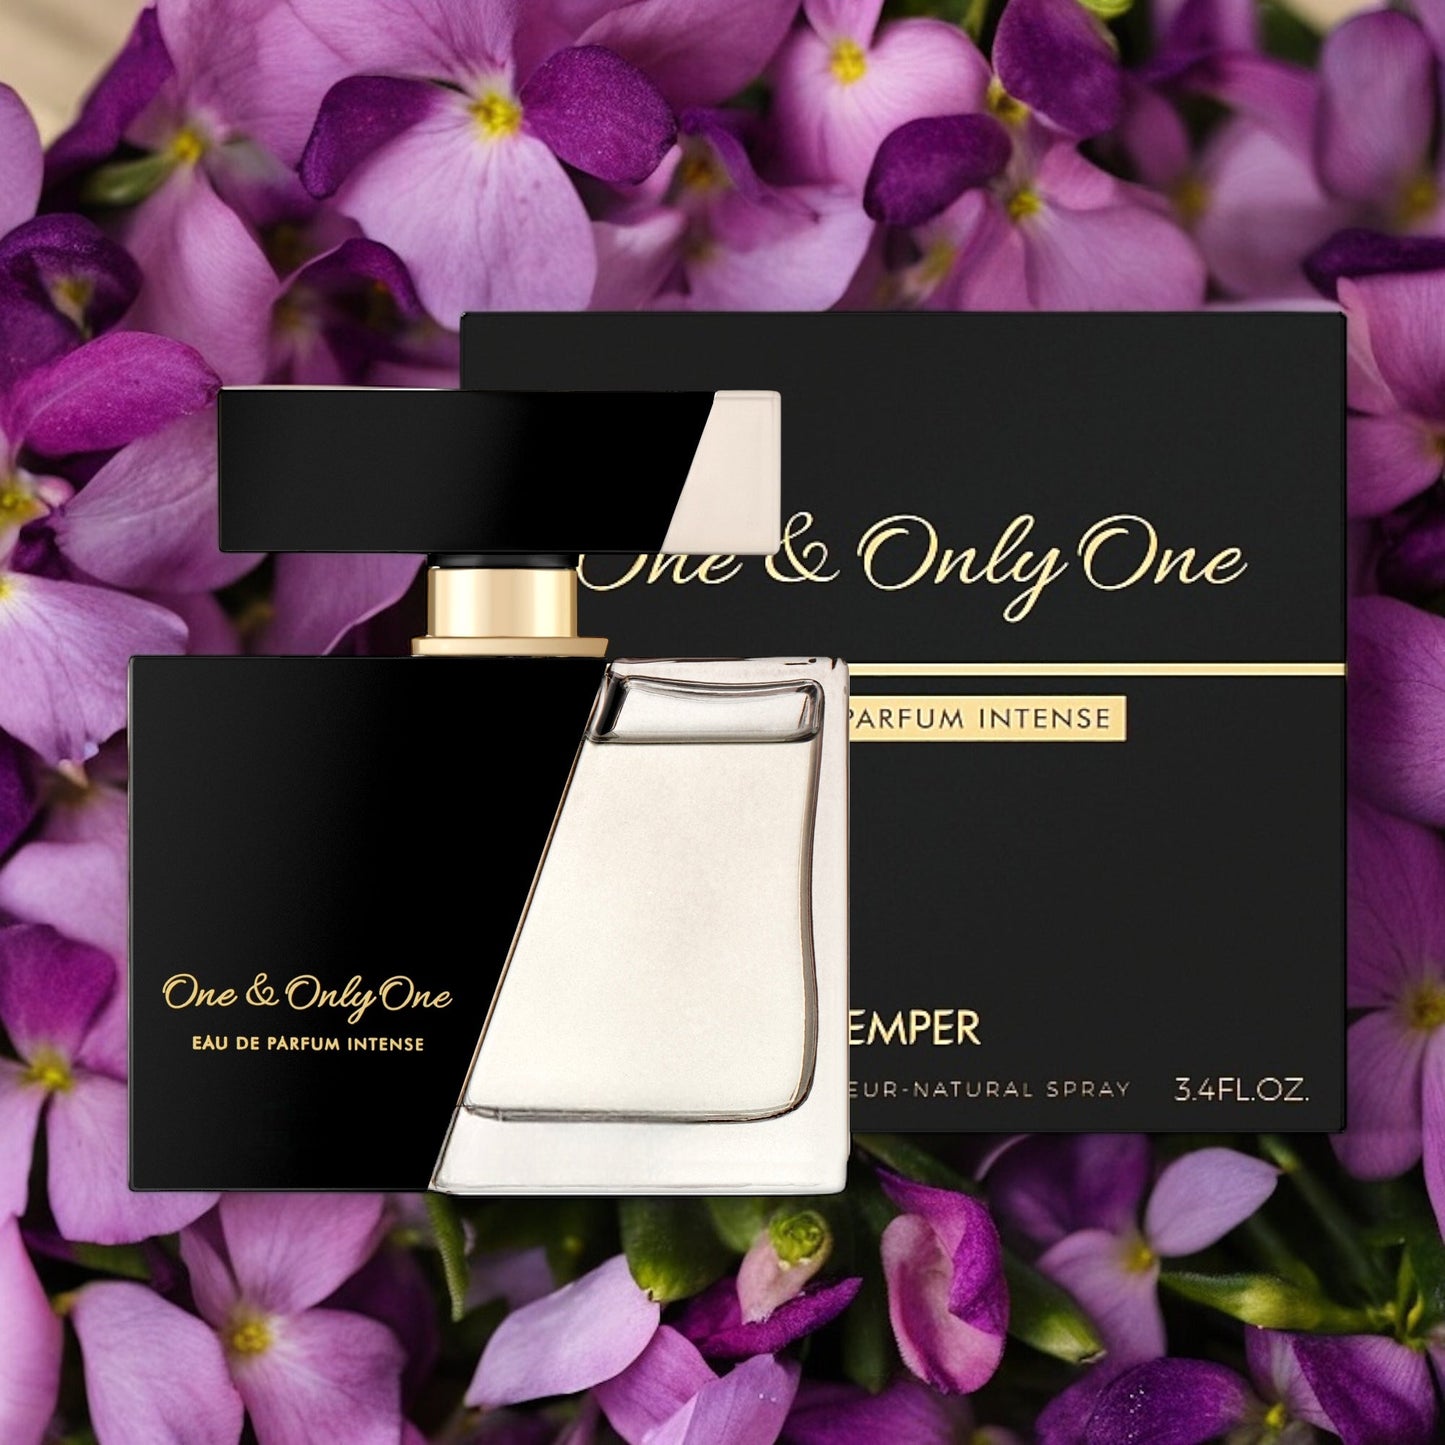 One & Only One By Emper Eau de Parfum 3.4 oz Women